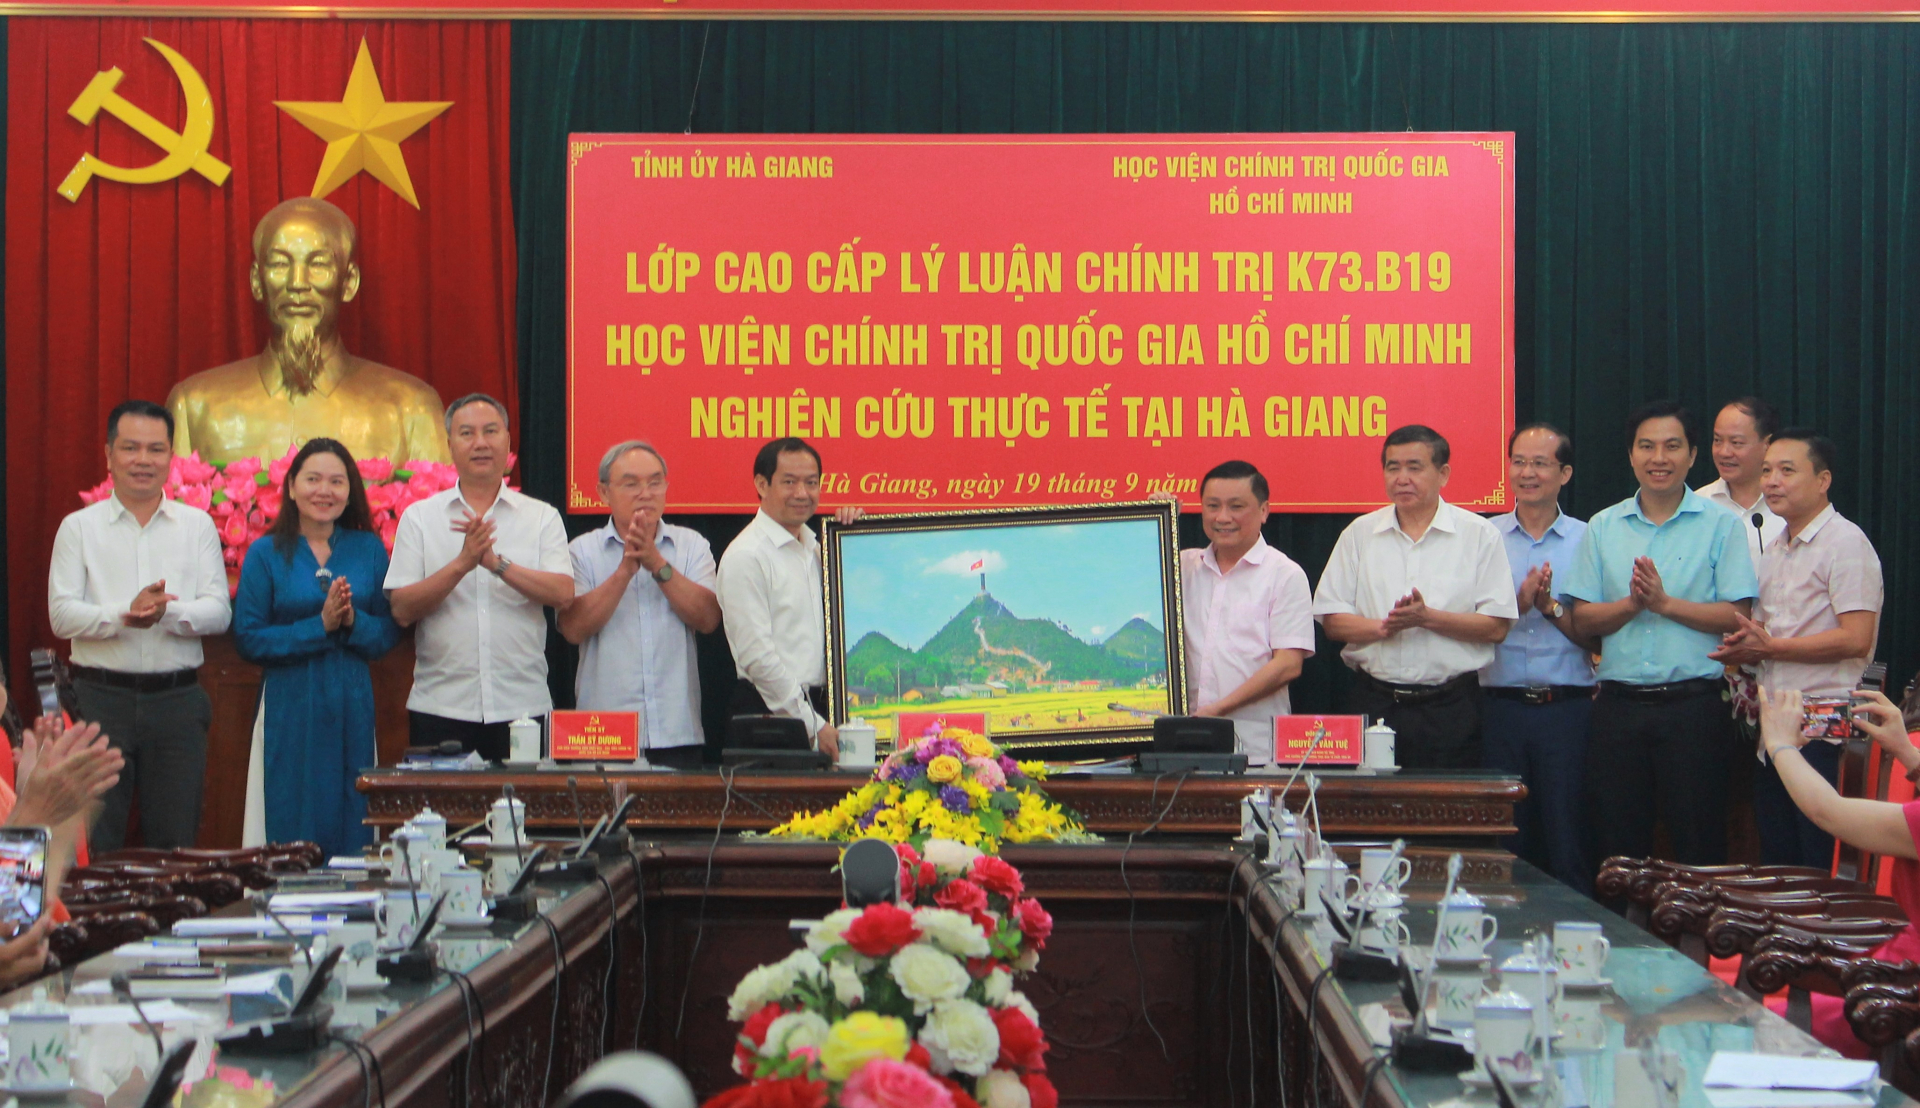 Thay mặt Tỉnh ủy Hà Giang, đồng chí Nguyễn Minh Tiến tặng đoàn công tác bức tranh Cột cờ quốc gia Lũng Cú